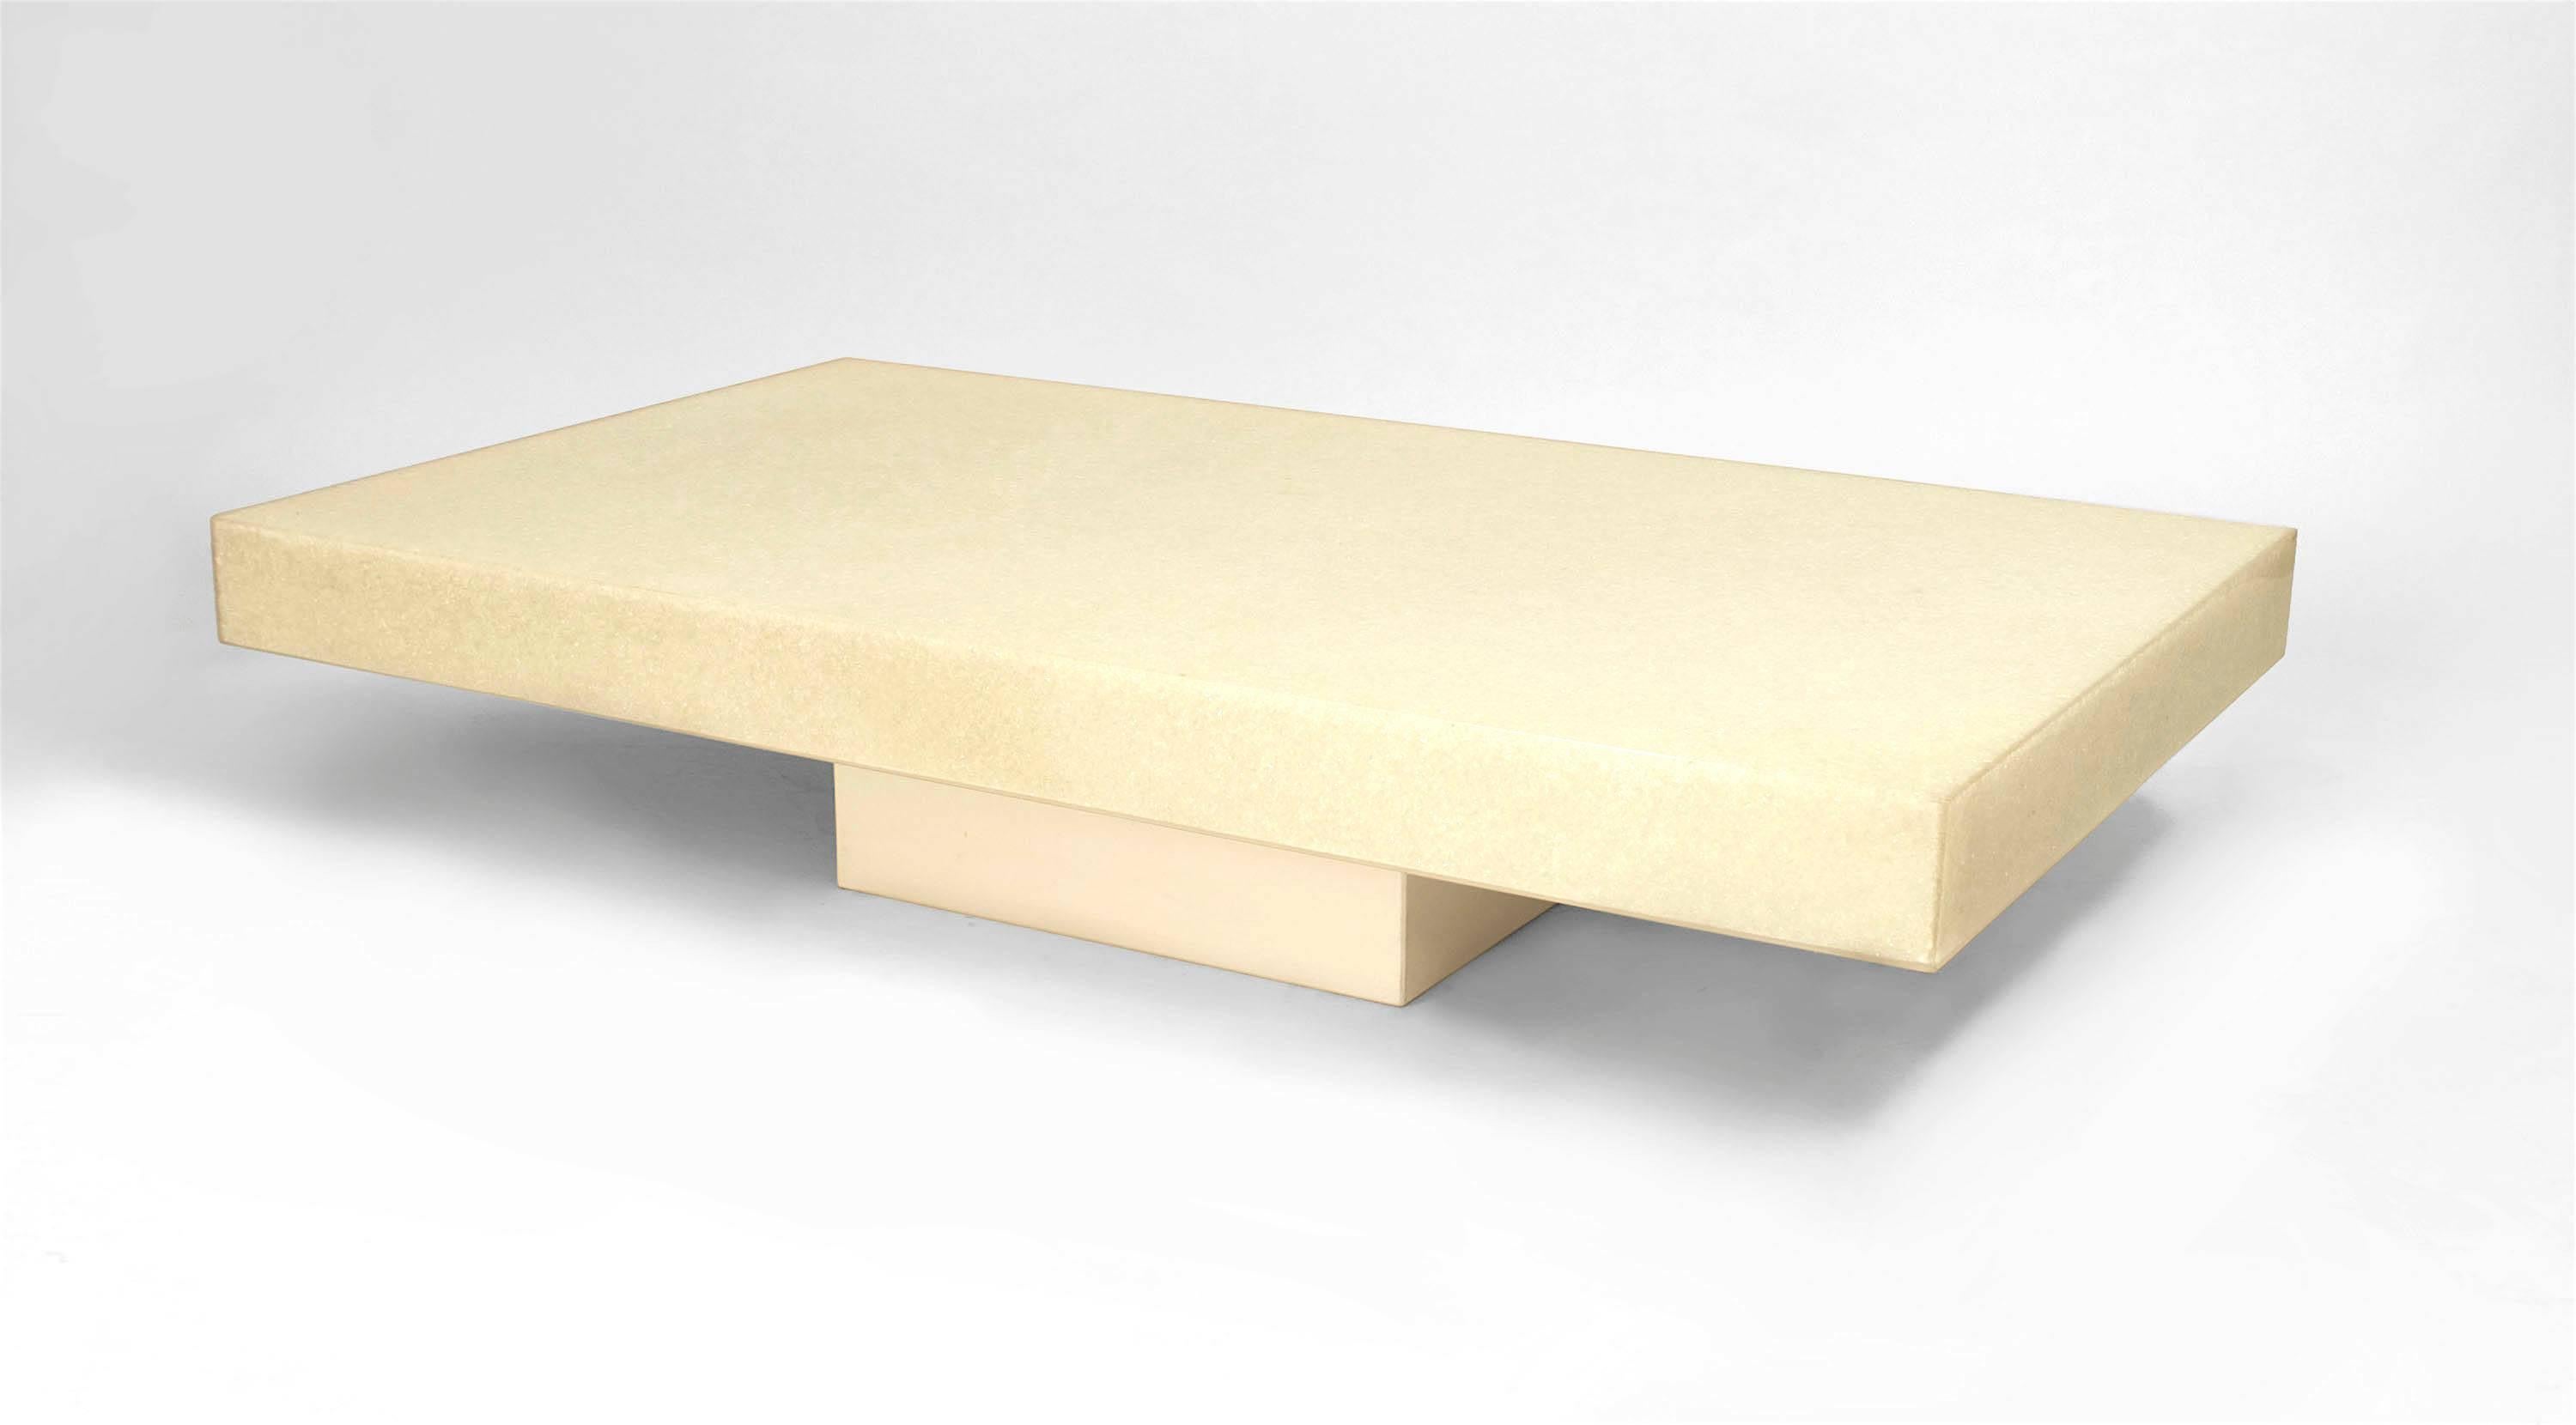 Table basse rectangulaire en résine craquelée blanc cassé sur un socle assorti, de conception moderniste française (années 1970). (à la manière de MARIE-CLAUDE FOUQUIERES)